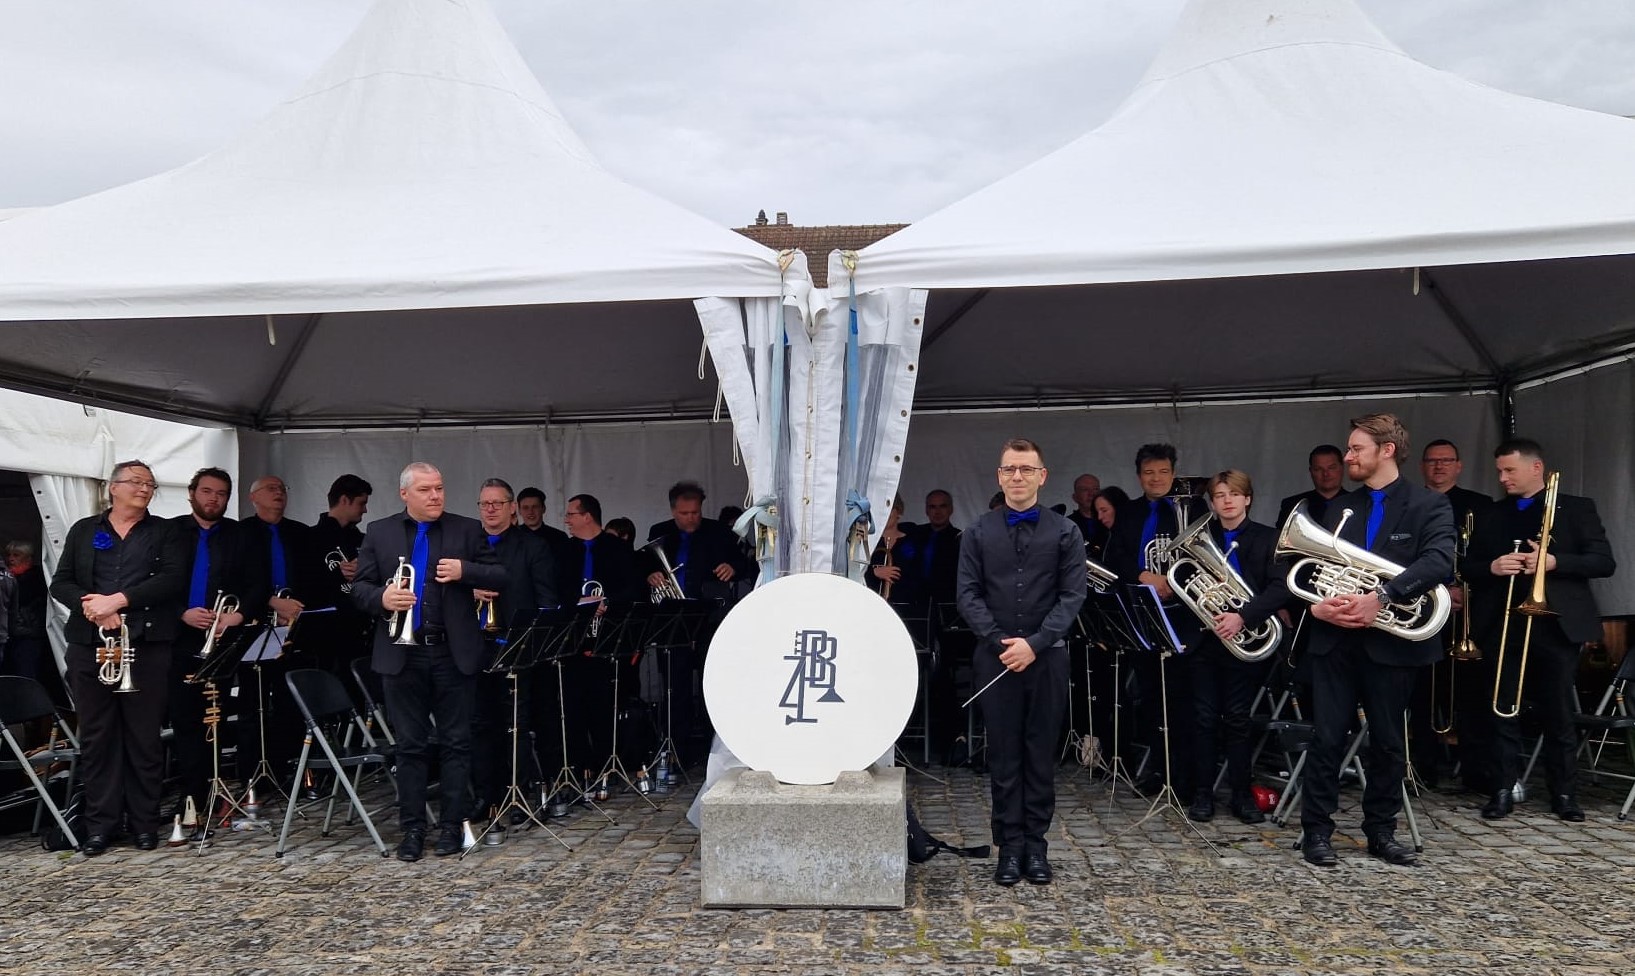 BrassBand Zuid-Limburg brengt gesmaakt optreden op de Stroopfeesten.